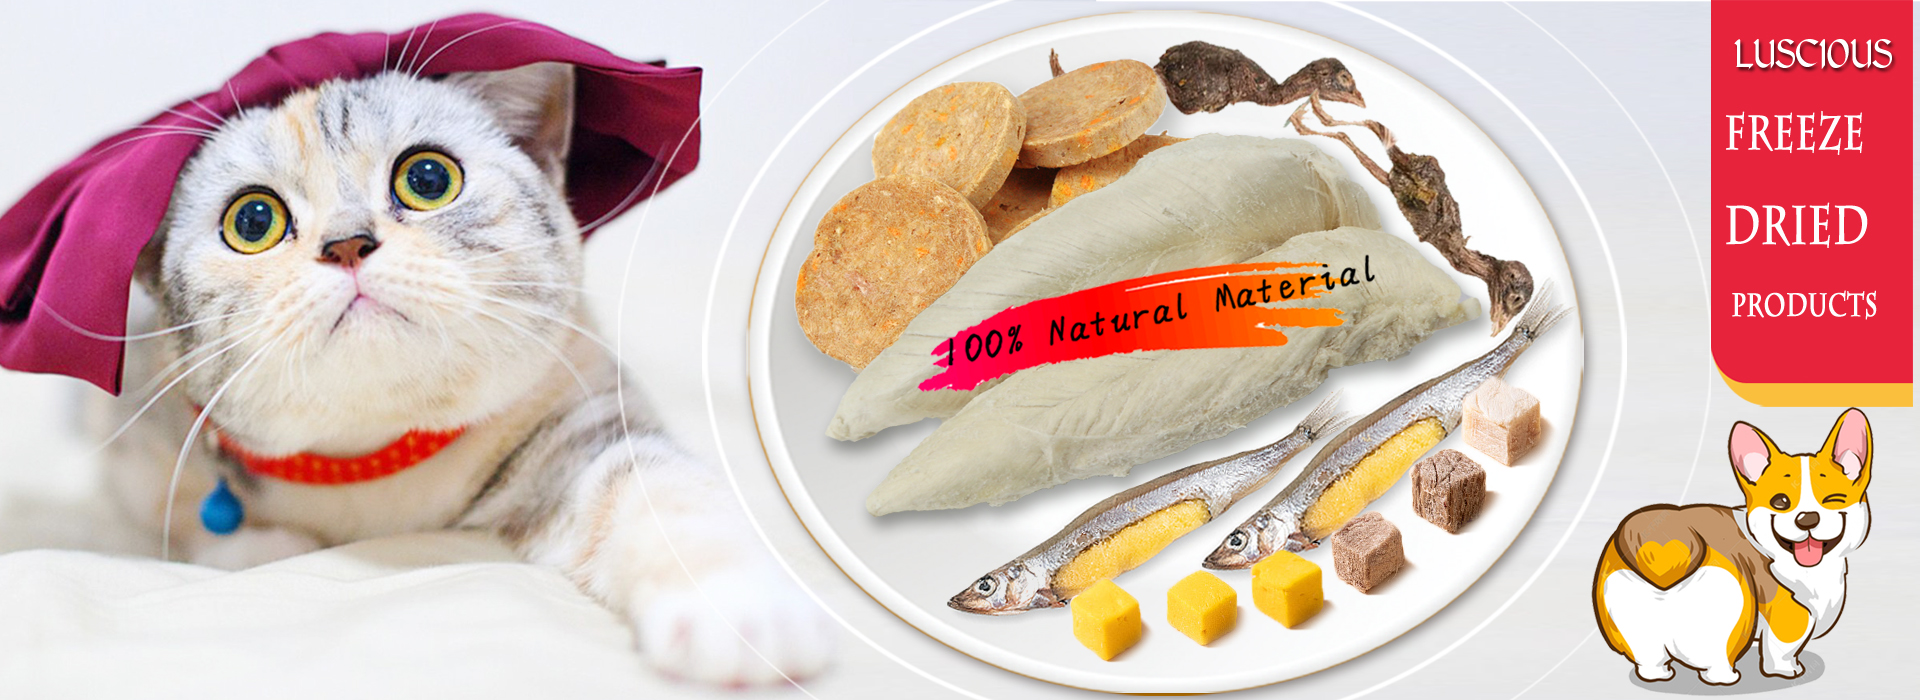 Dog Food, Cat Food, Pet Food, Pet Treats - Luscious